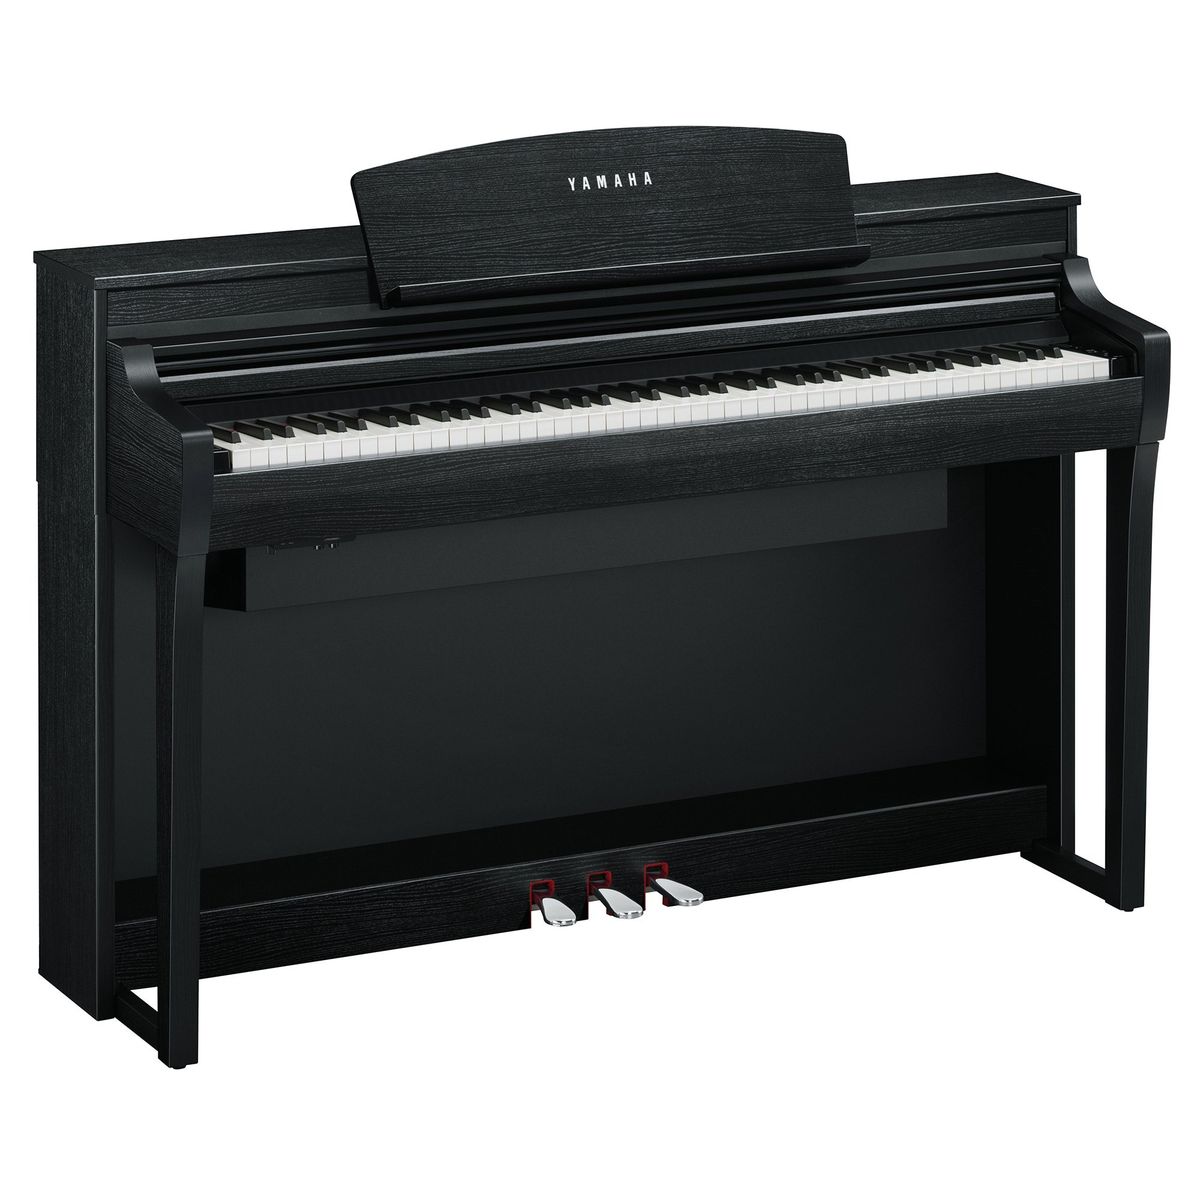 Цифровые пианино Yamaha CSP-275B любимые мелодии и ритмы популярная музыка для фортепиано